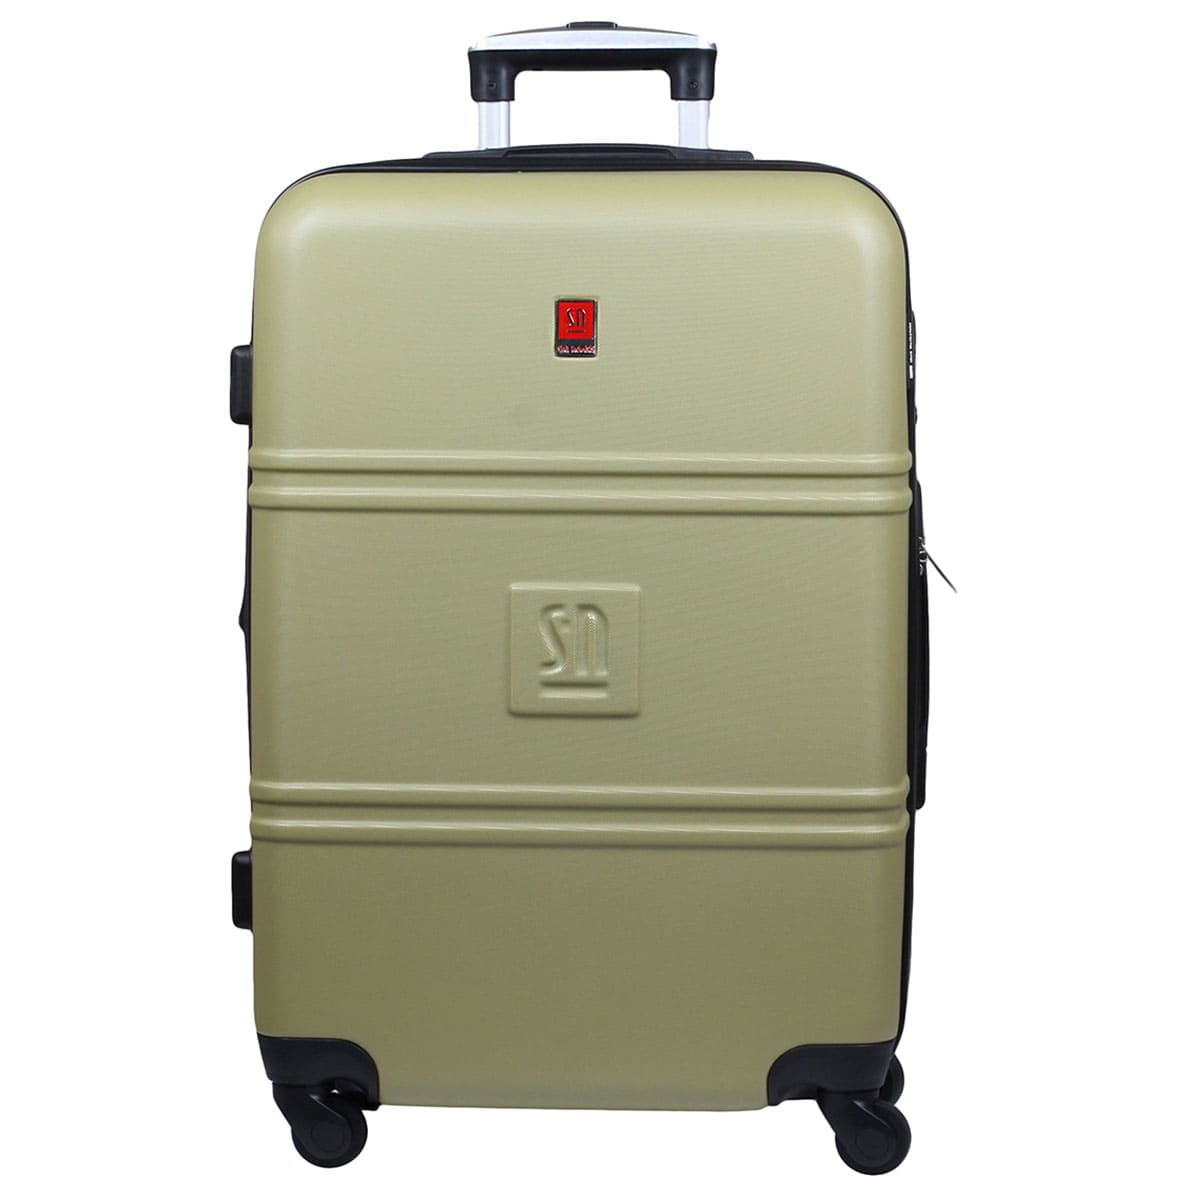 zielona-walizka-podrozna-duza-na-kolkach-Art-Class-04-0411S-07.jpg